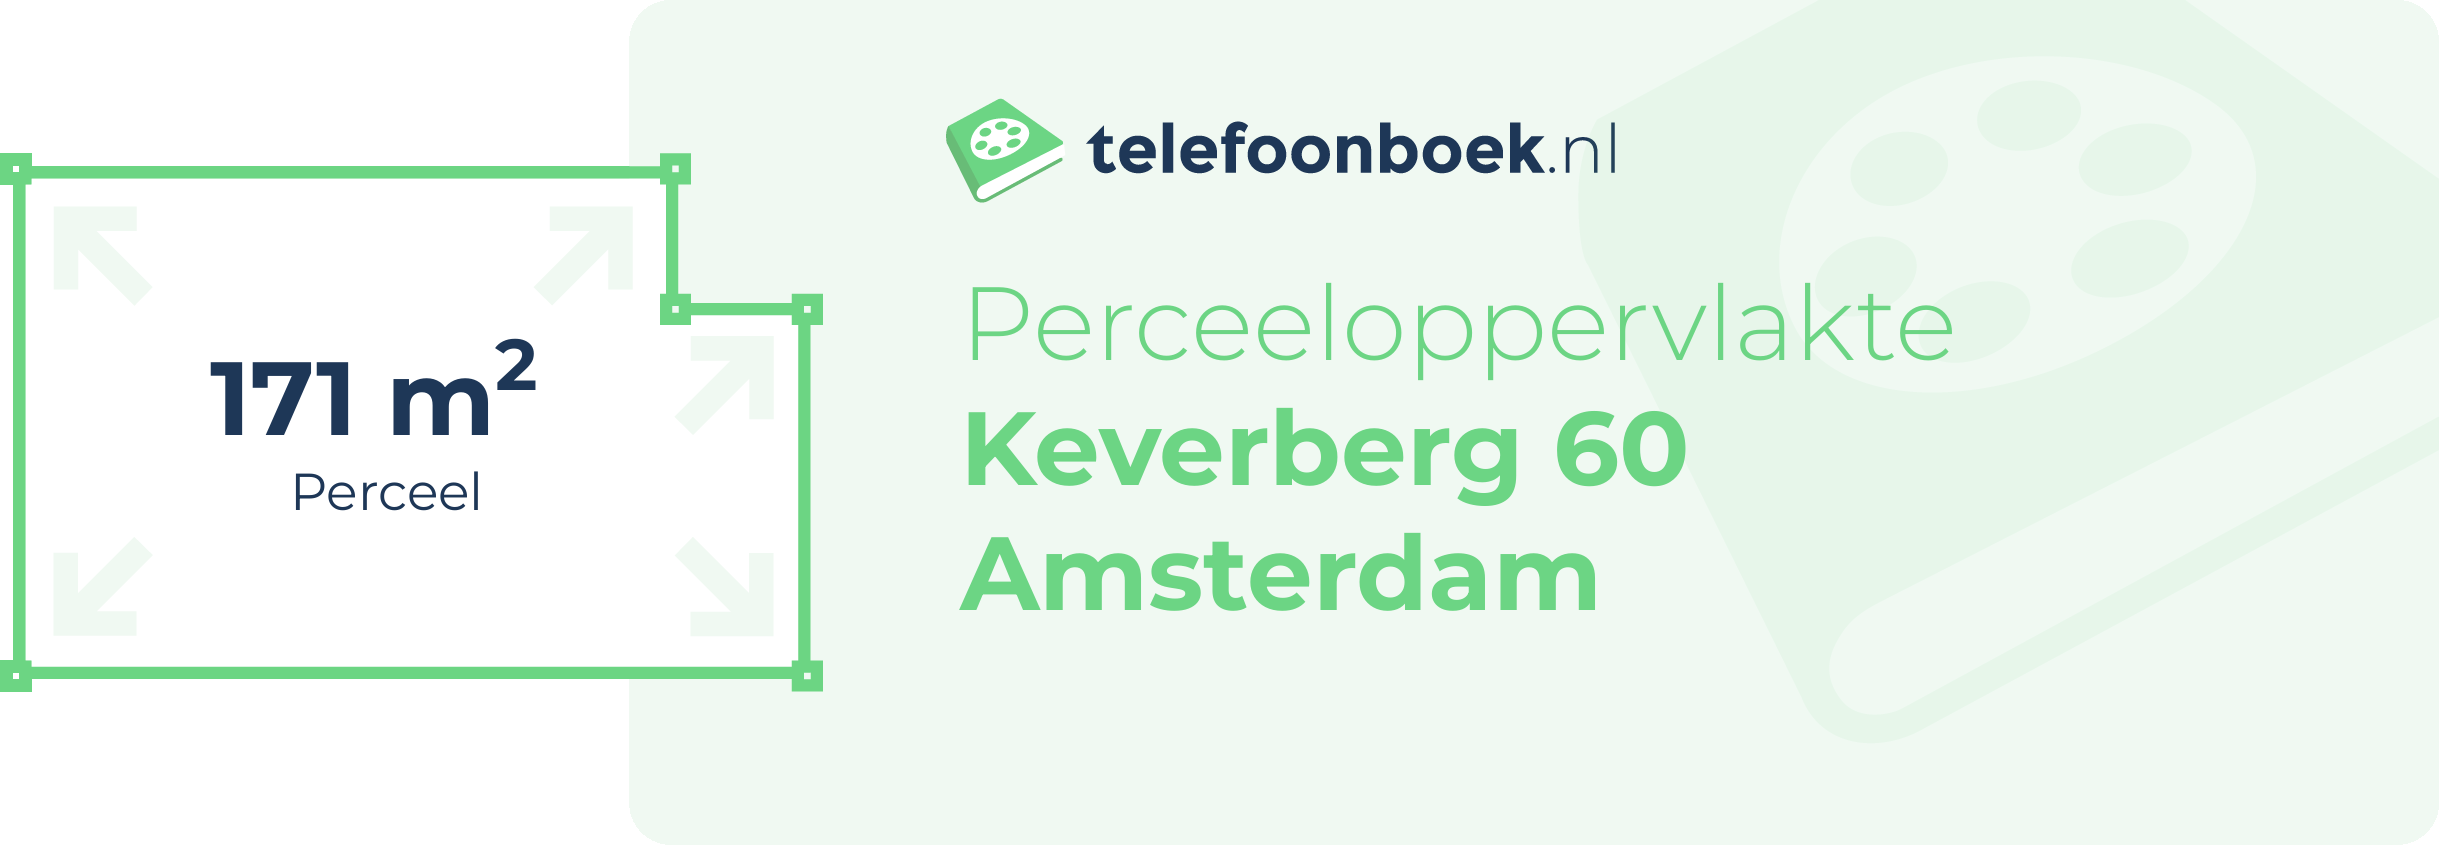 Perceeloppervlakte Keverberg 60 Amsterdam